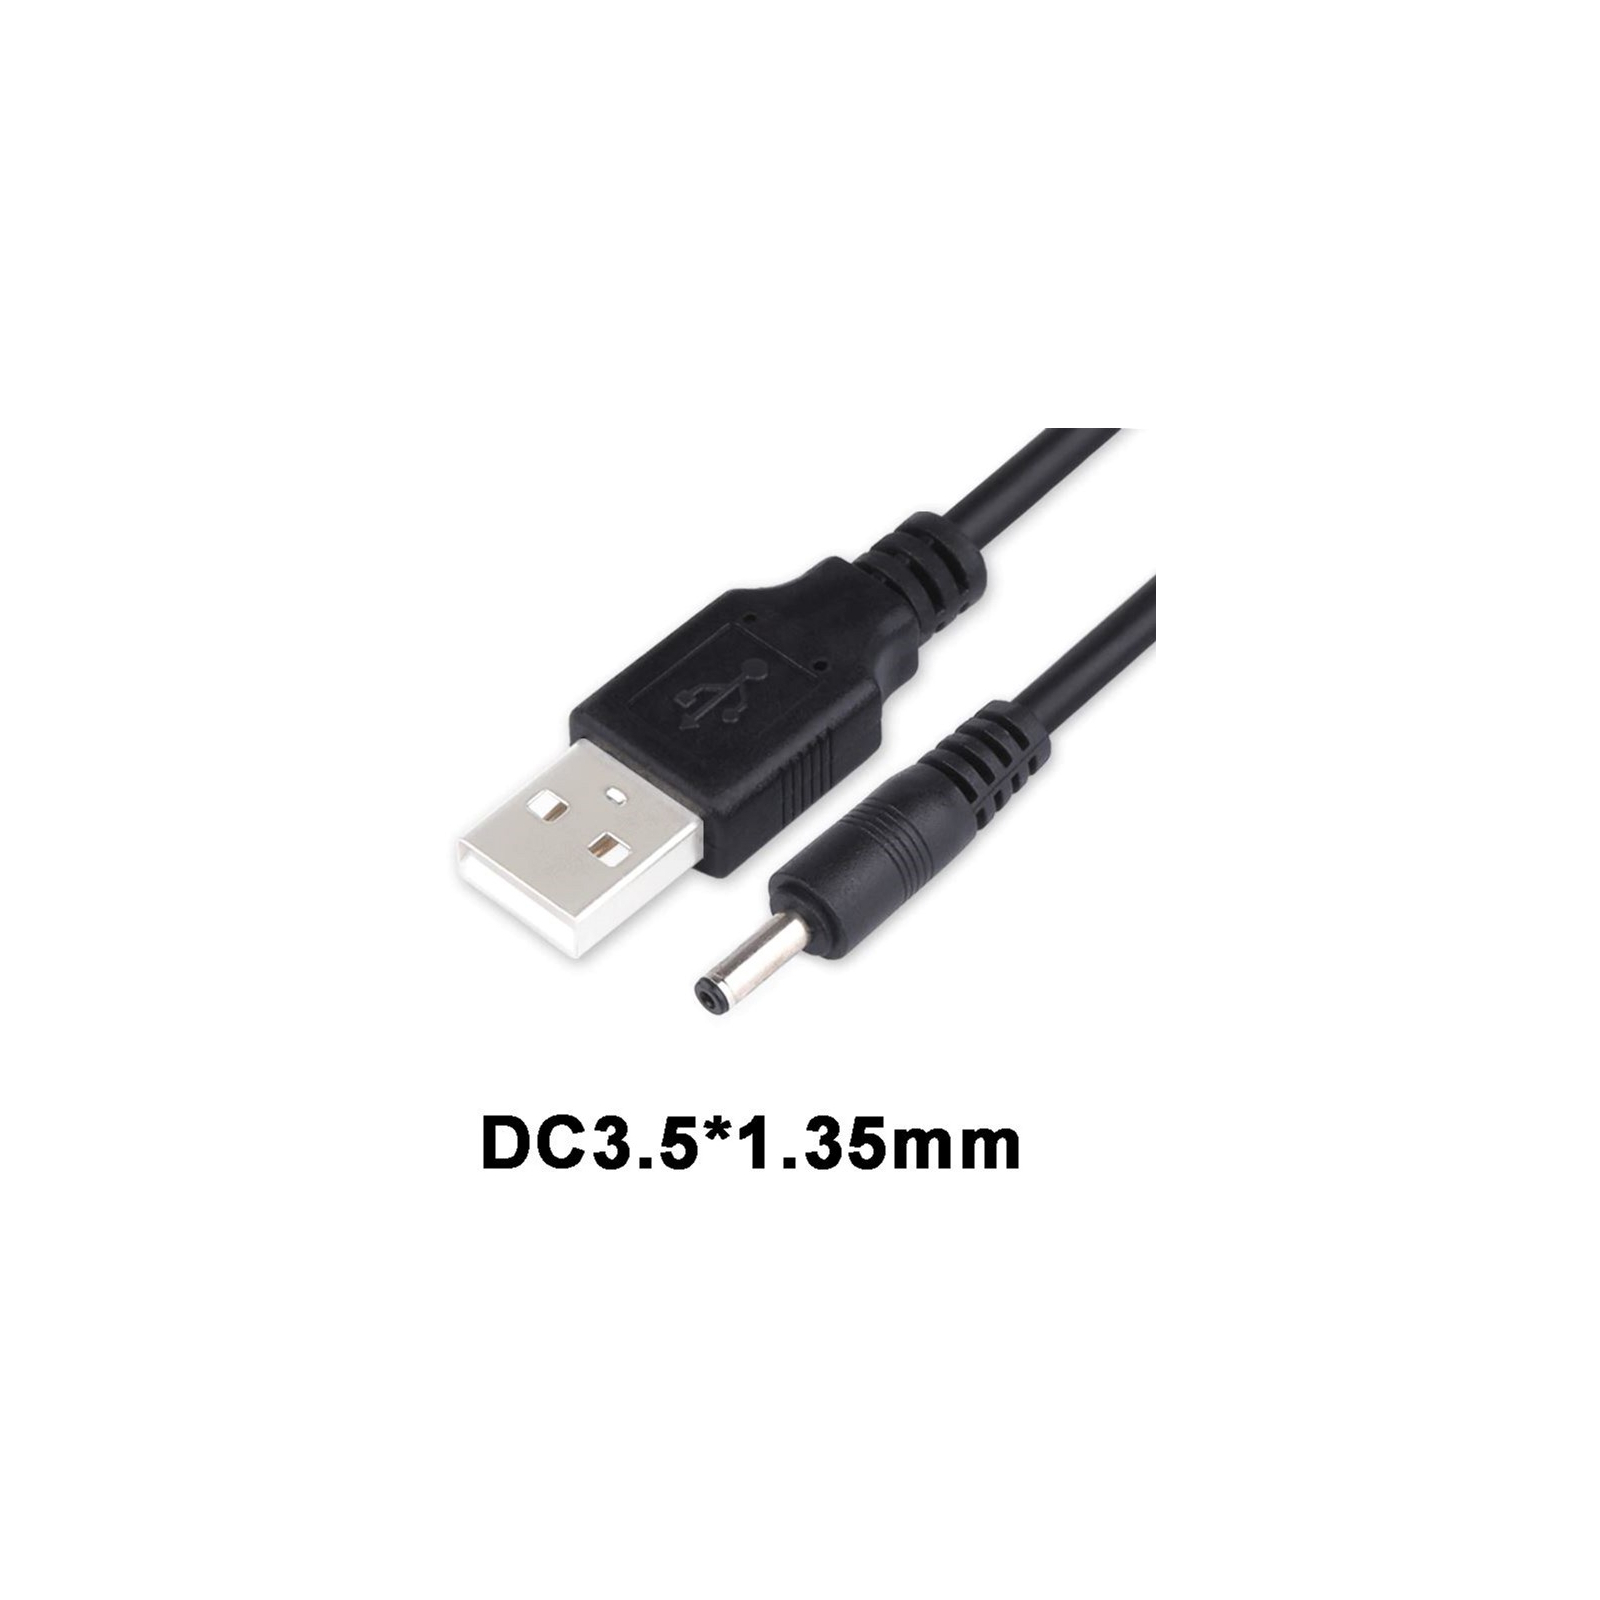 Кабель живлення USB 2.0 AM to DC 3.5 х 1.35 mm 1.0m USB 5V to DC 5V Dynamode (DM-USB-DC-3.5x1.35mm) зображення 3